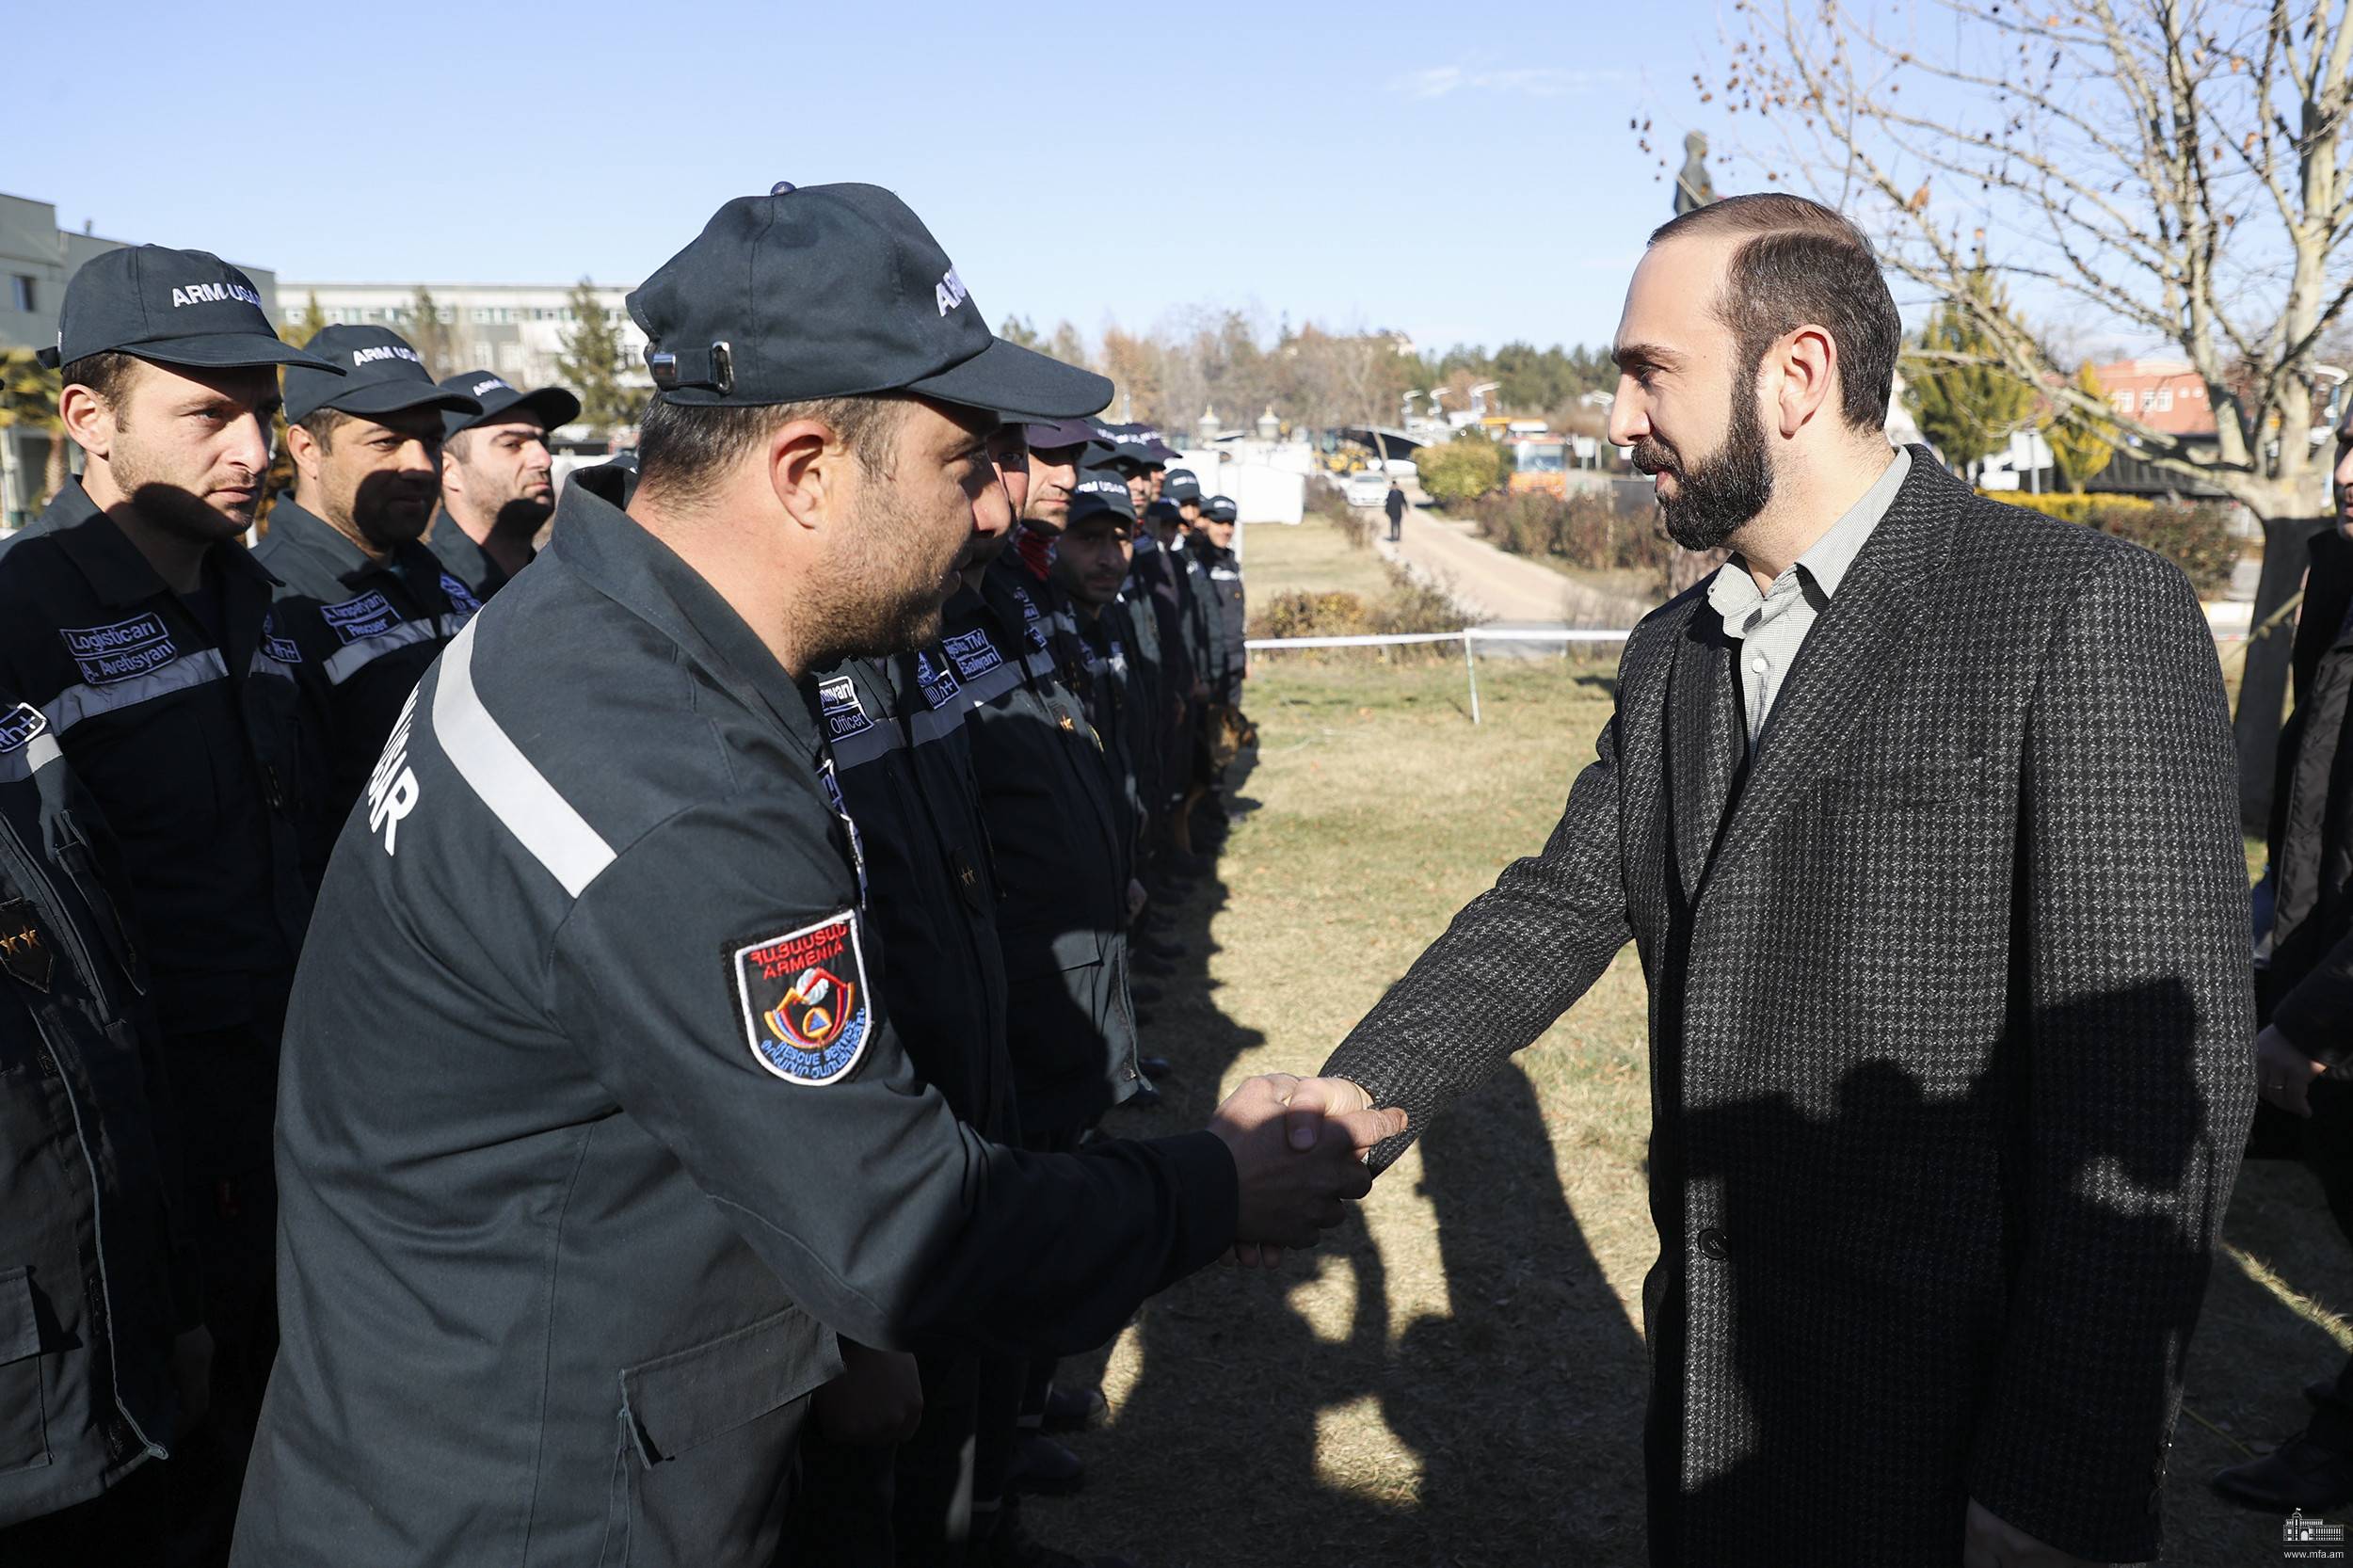 Հայաստանի արտաքին գործերի նախարար Արարատ Միրզոյանը Թուրքիայի Ադըյաման քաղաքում հանդիպել է հայ փրկարարների հետ